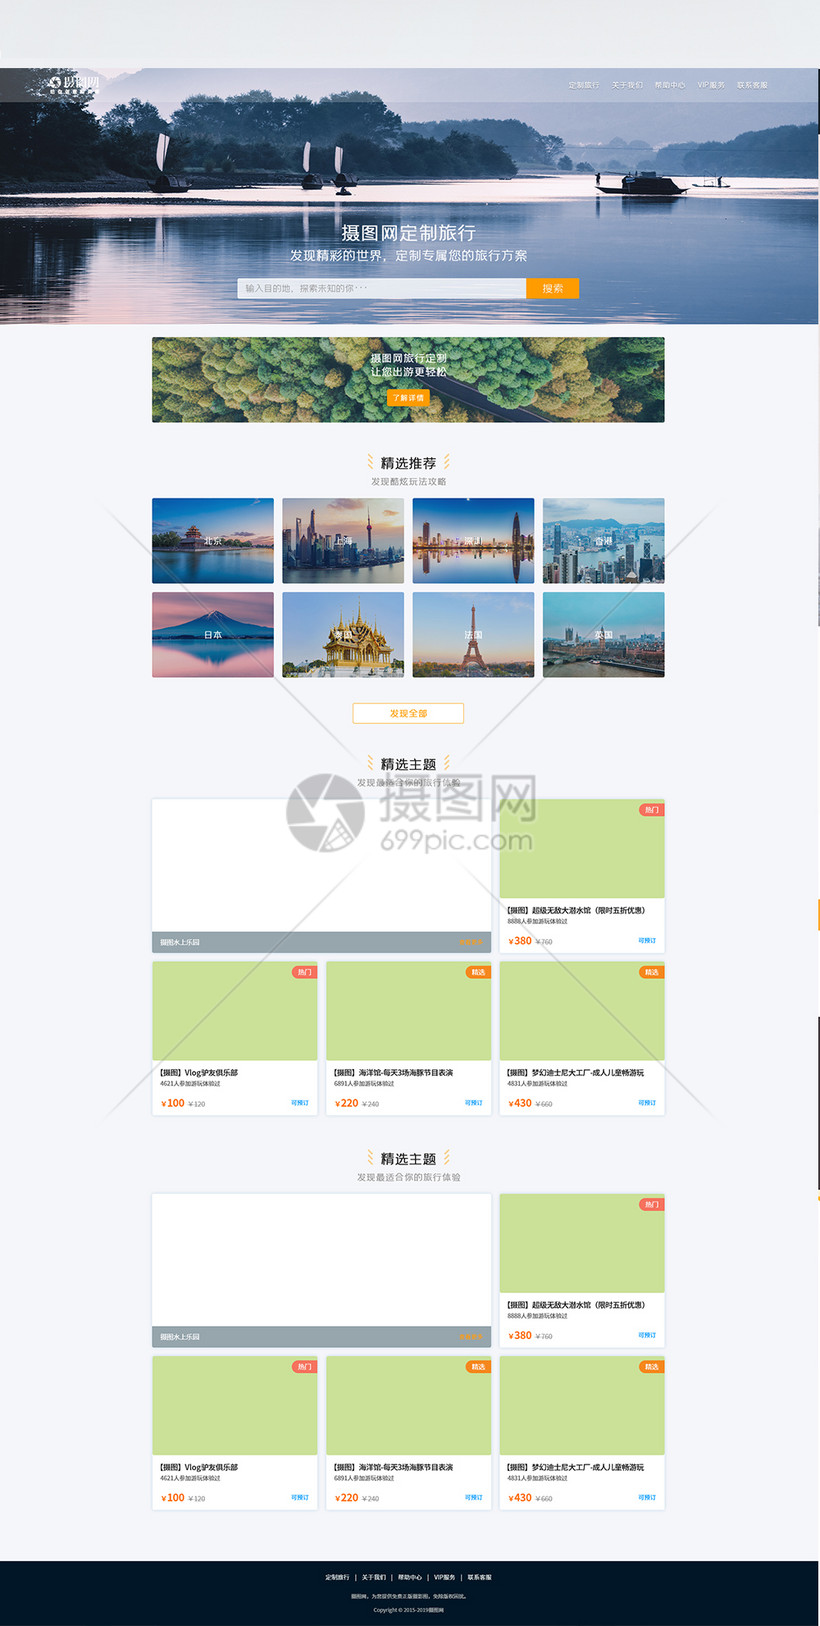 UI设计web旅游网站首页图片